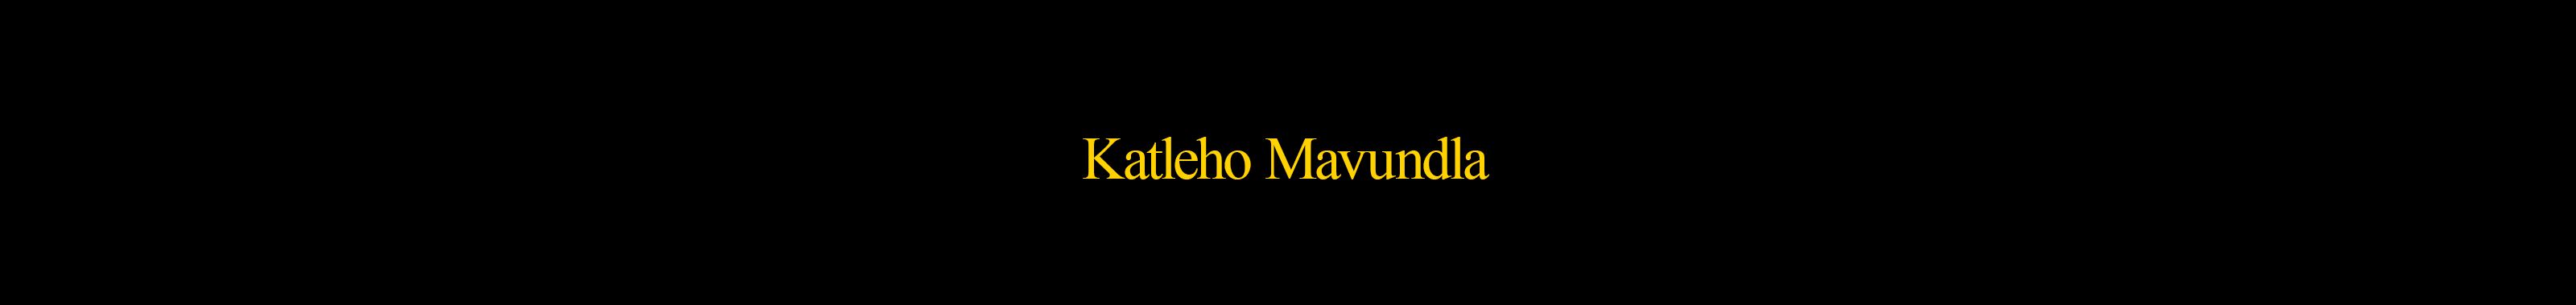 Katleho Mavundla's profile banner